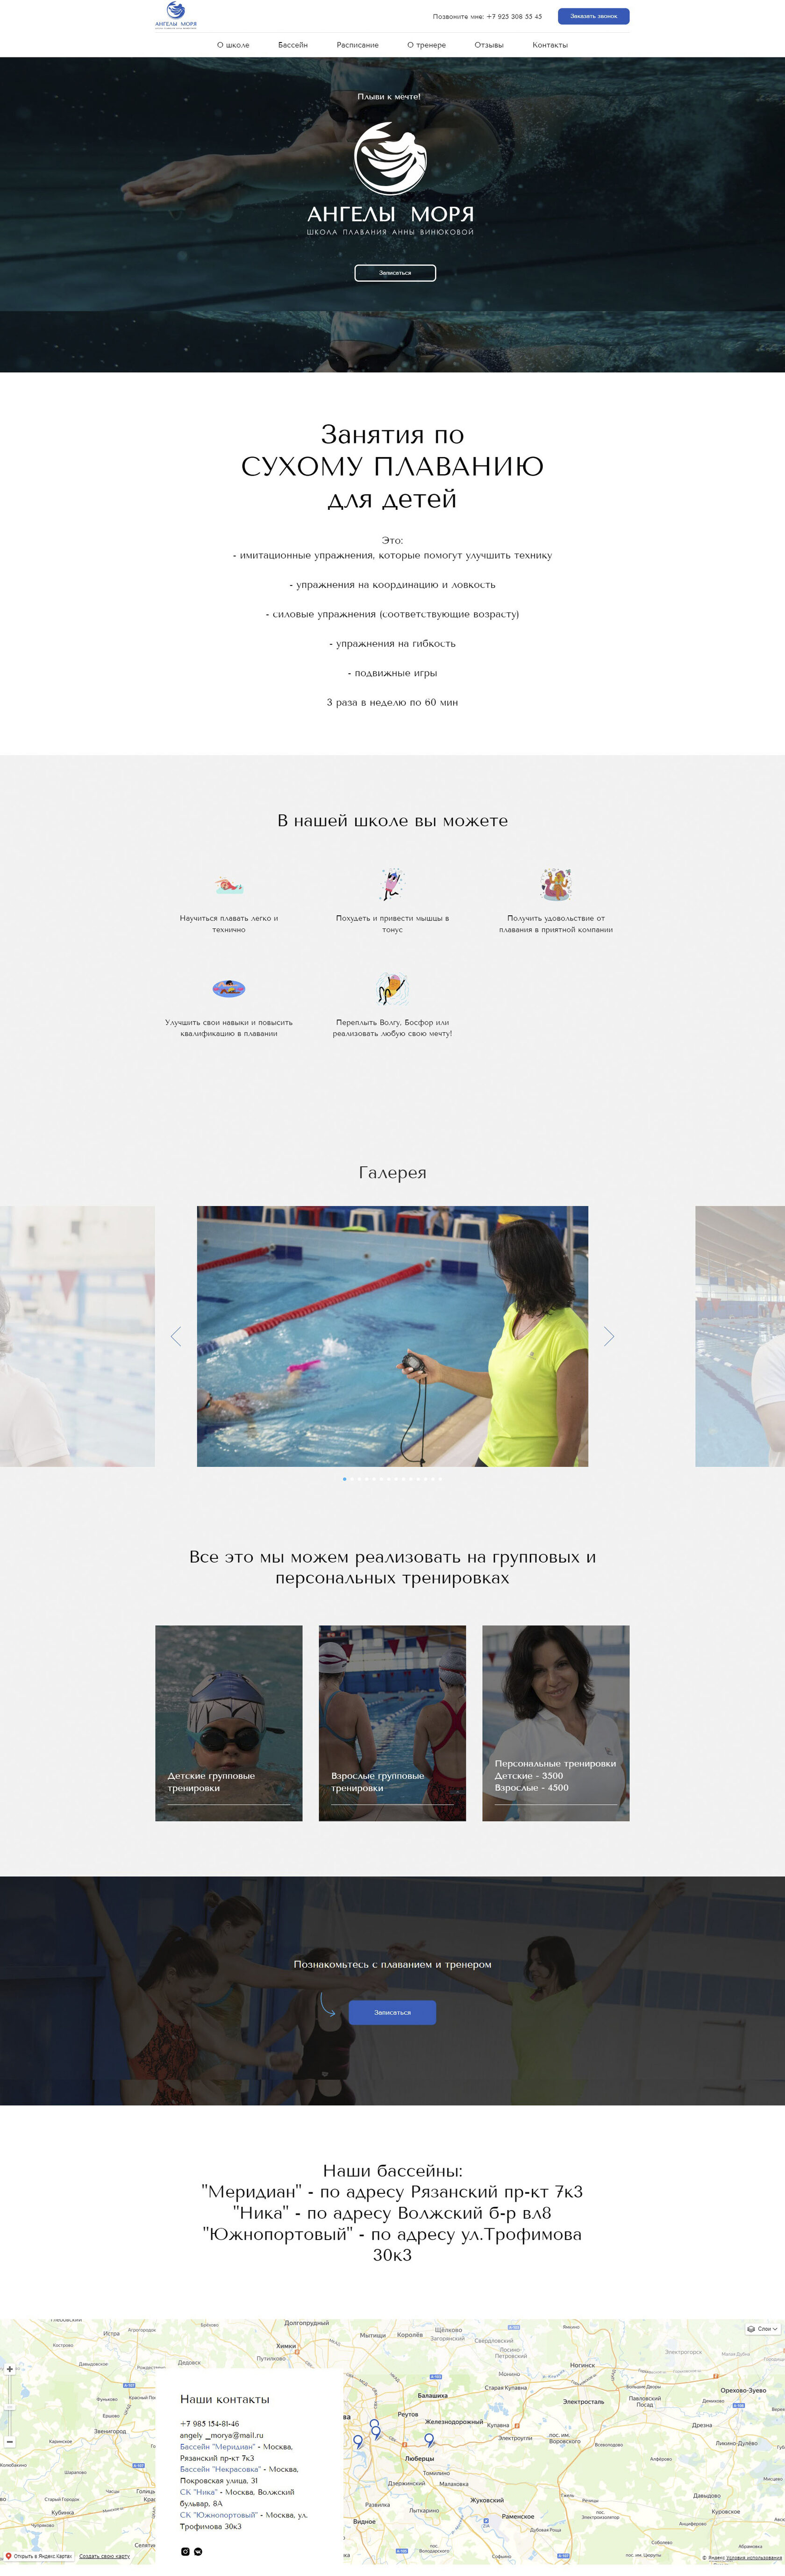 пример одностраничного сайта для частной школы плавания